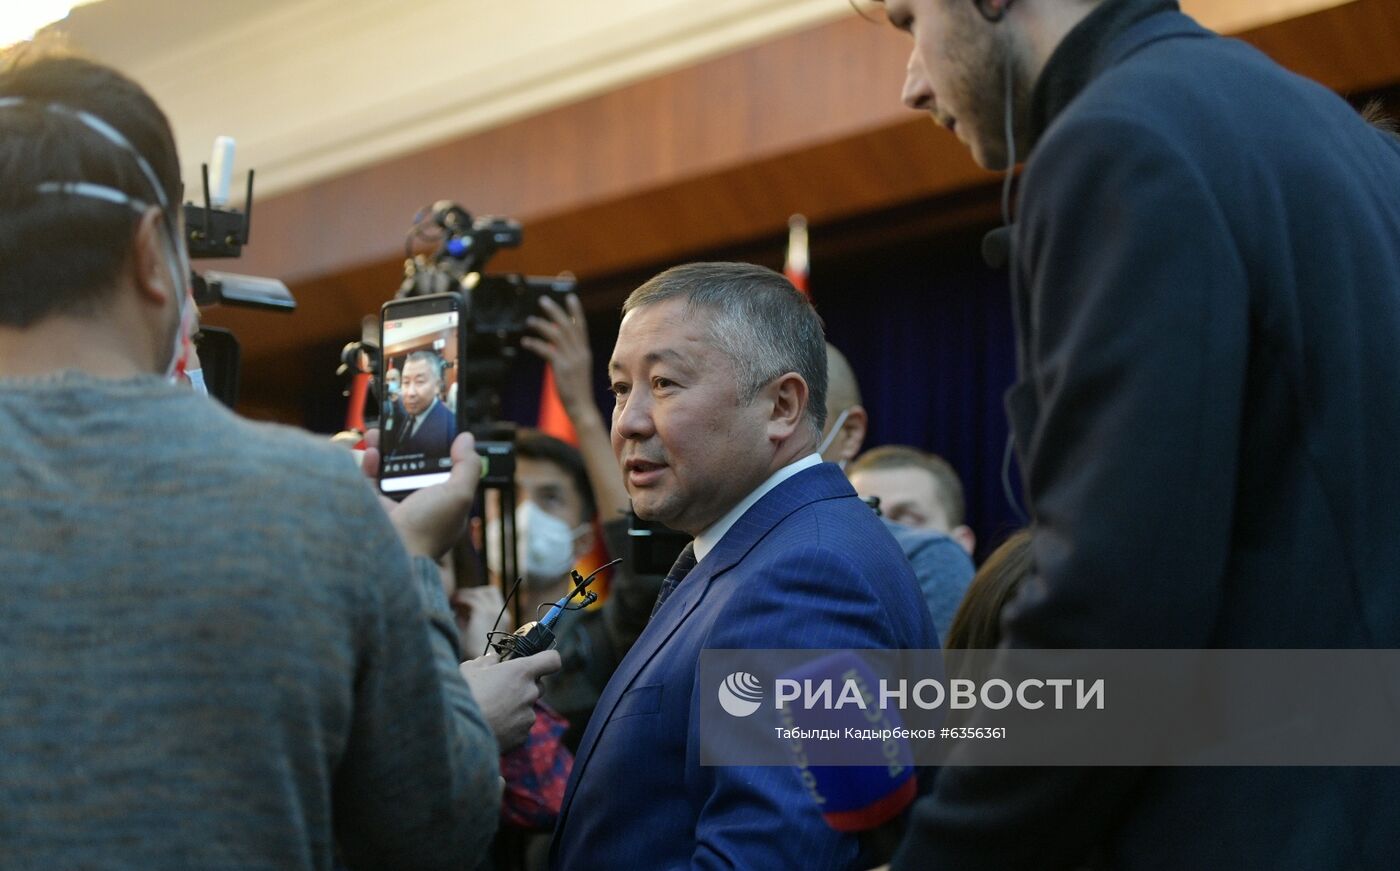 Заседание парламента Киргизии